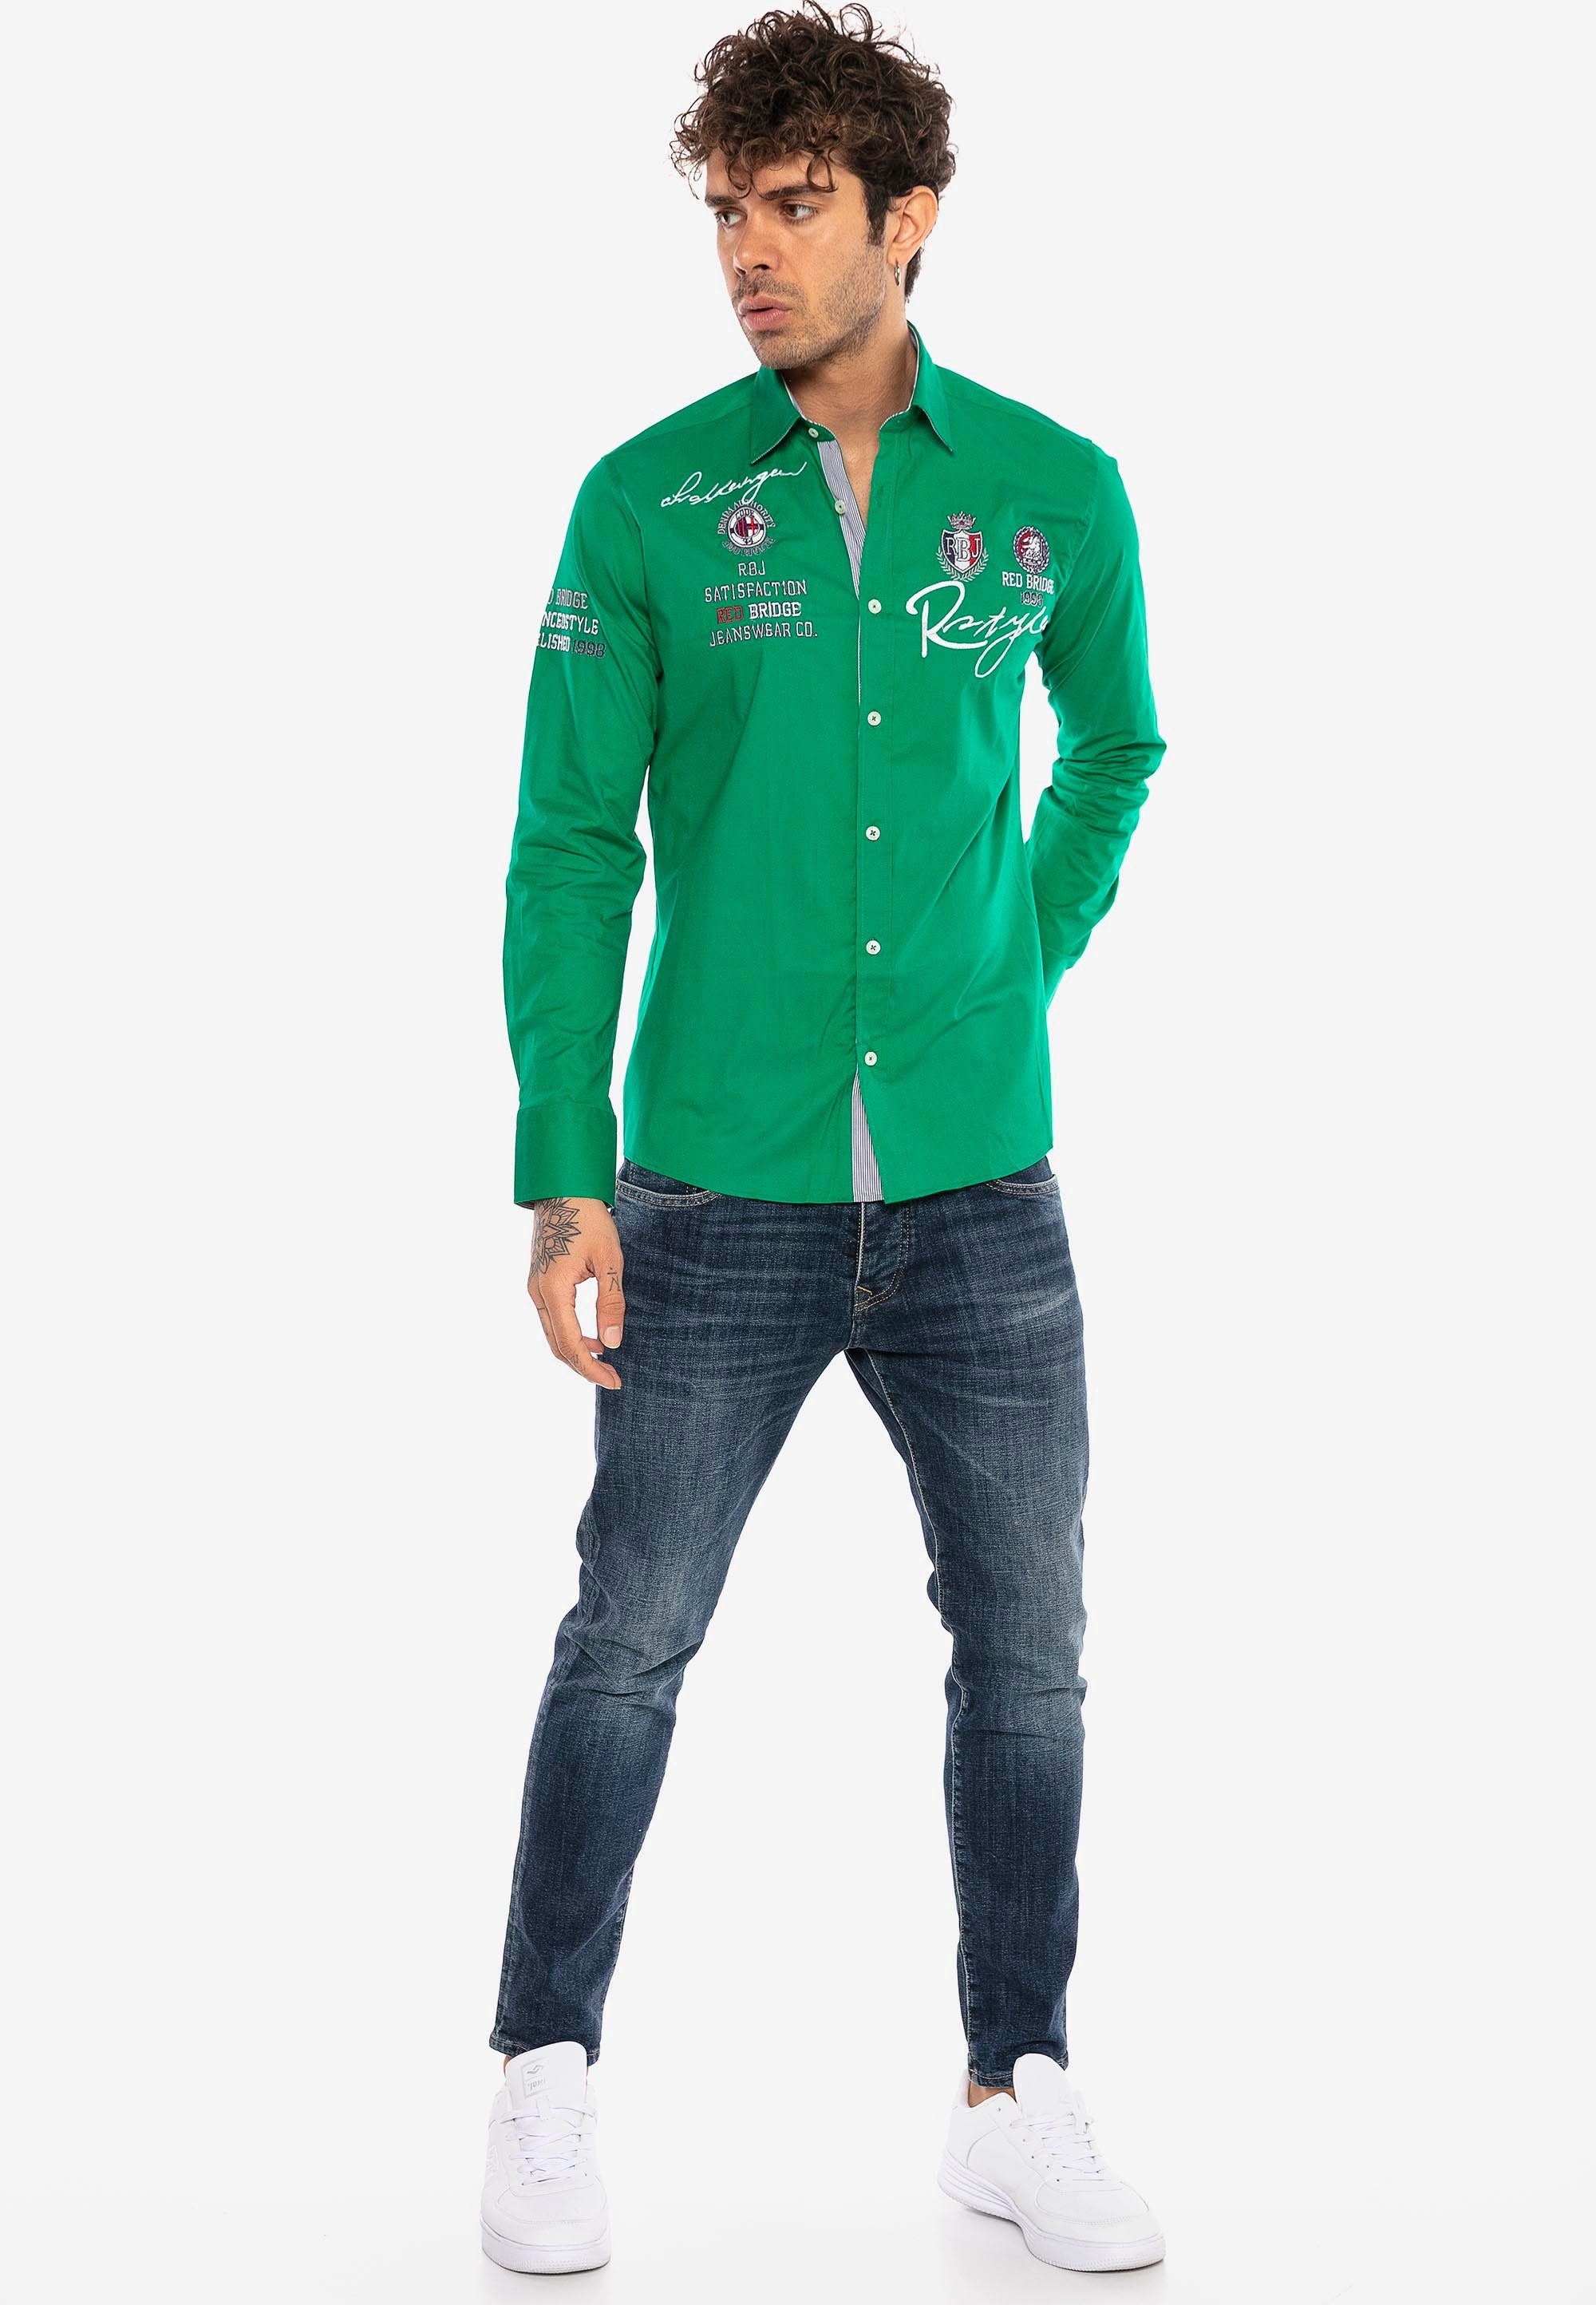 Slim City grün Langarmhemd RedBridge mit Stickerei Fit-Schnitt Jersey im